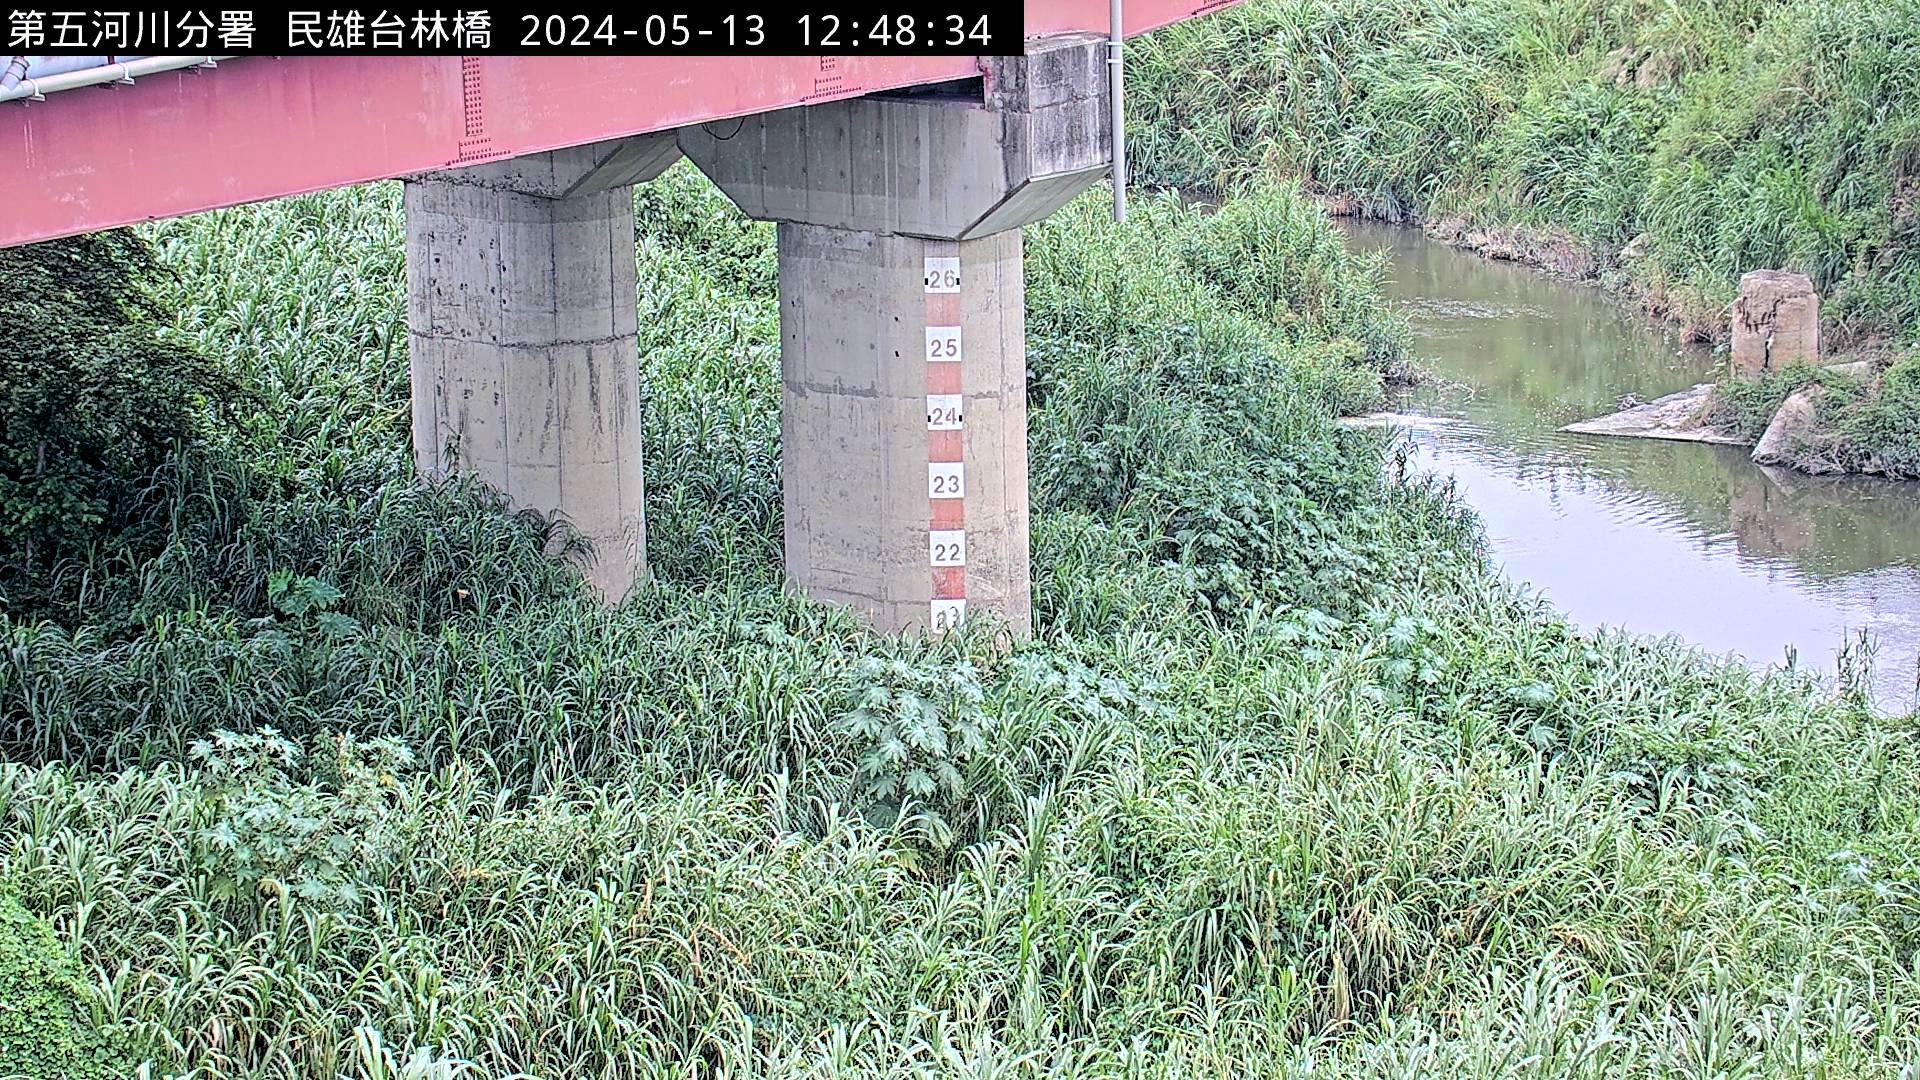 防災中心 台林橋(固定鏡頭) 氣溫32.7度